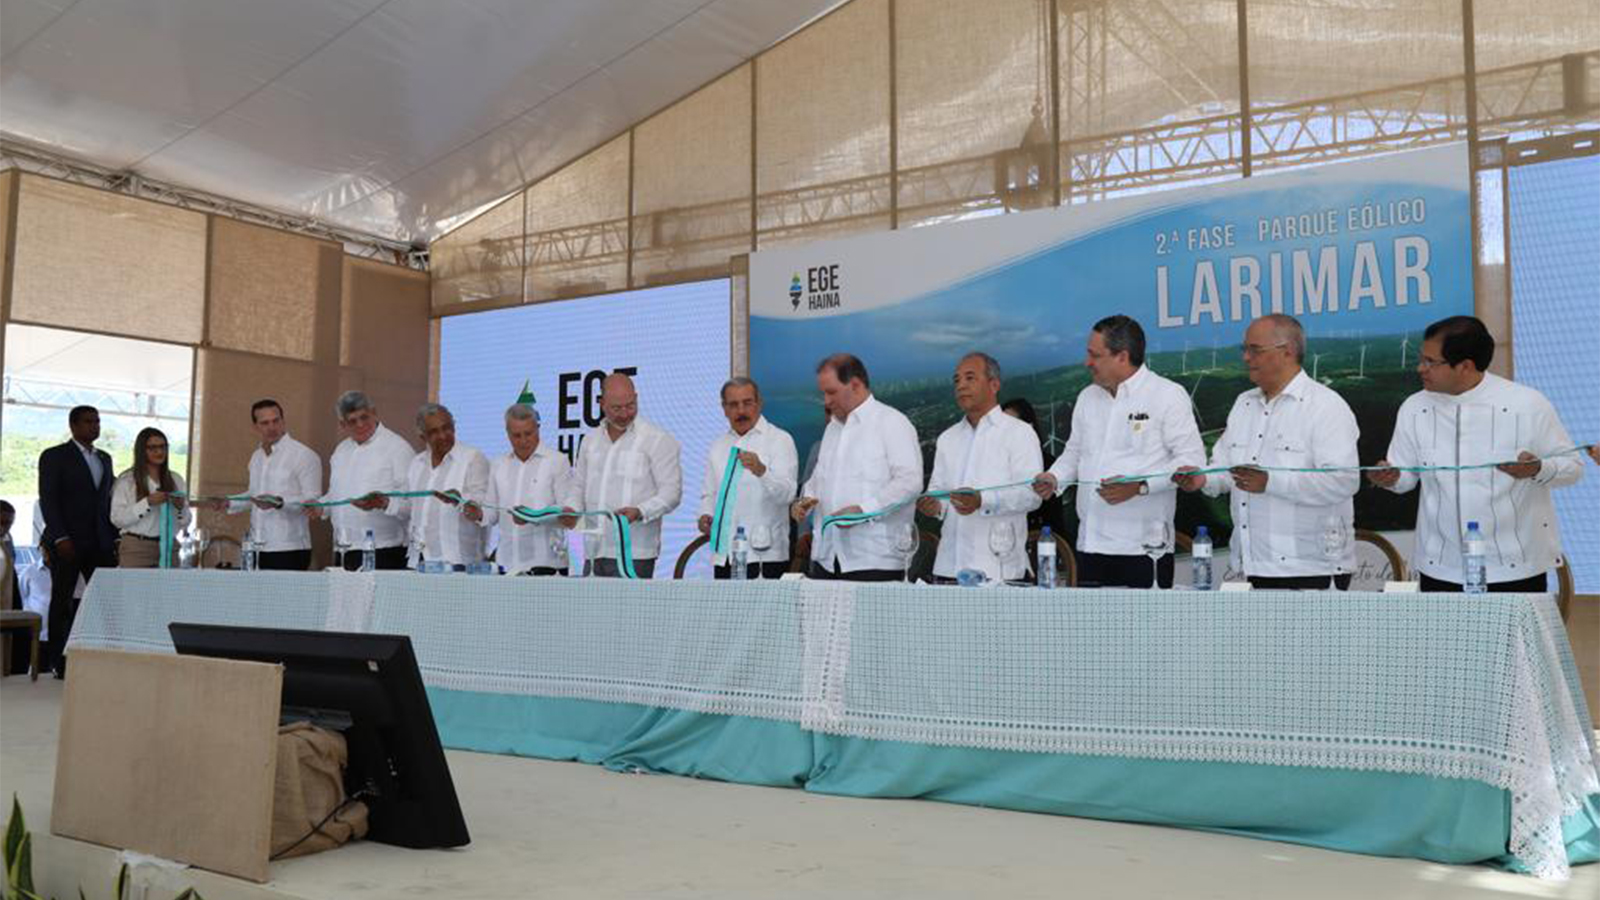 REPÚBLICA DOMINICANA: EGE Haina integra 14 nuevos aerogeneradores con capacidad de 48.3 MW al Parque Eólico Larimar; presidente Danilo Medina encabeza acto